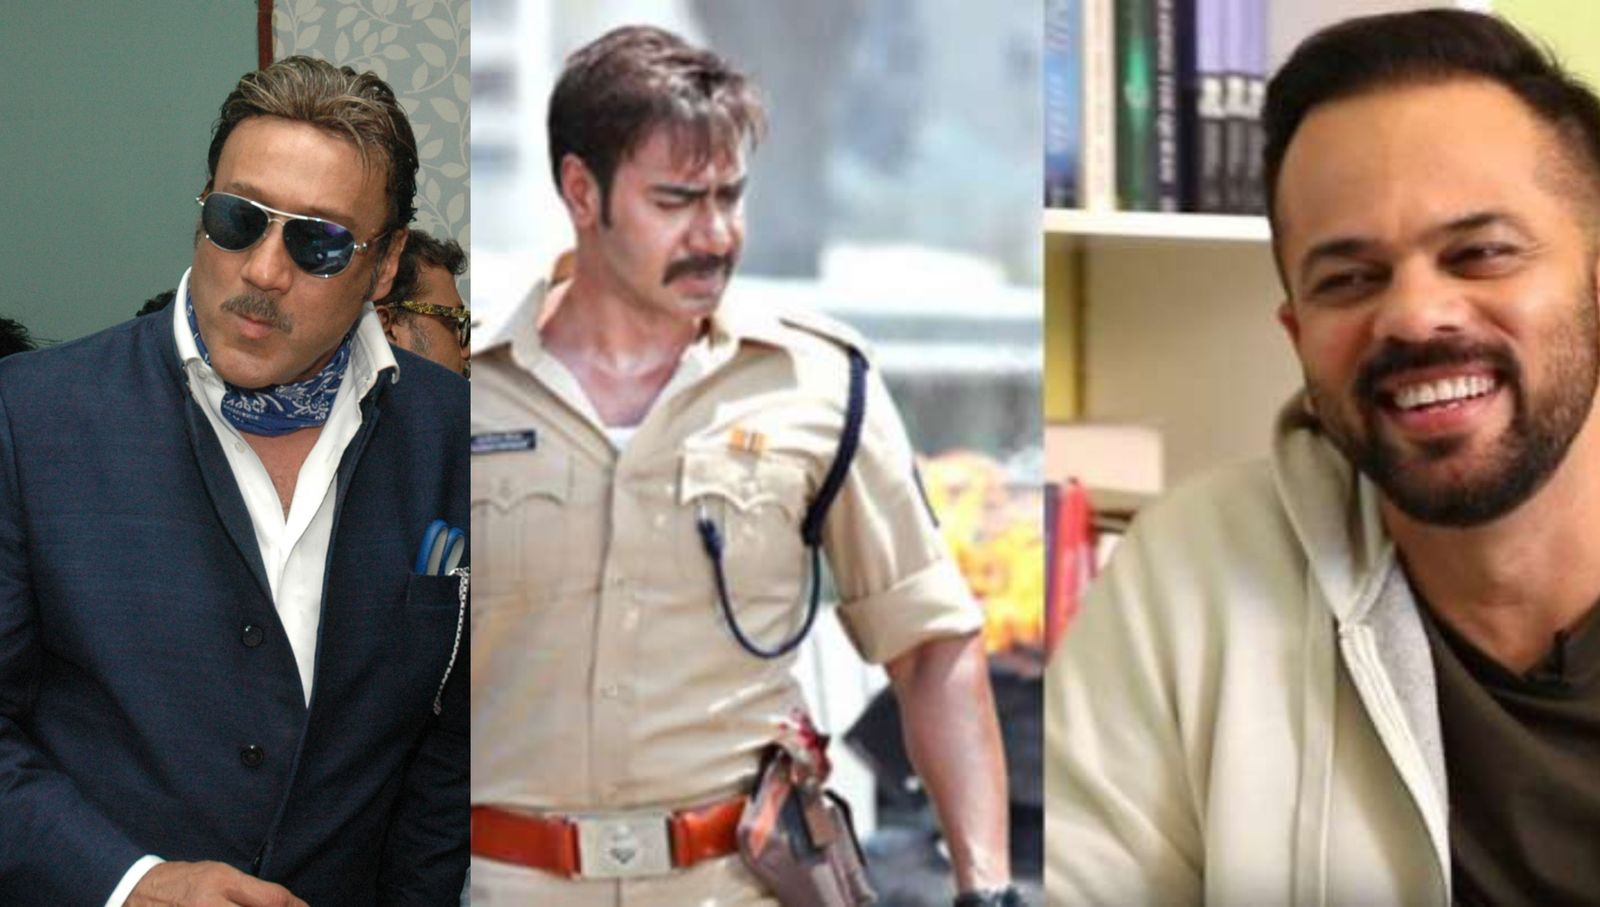 अक्षय कुमार की 'सूर्यवंशी' में सुपरविलेन होंगे जैकी श्रॉफ, सिंघम 3 में अजय देवगन से भी लेंगे टक्कर 